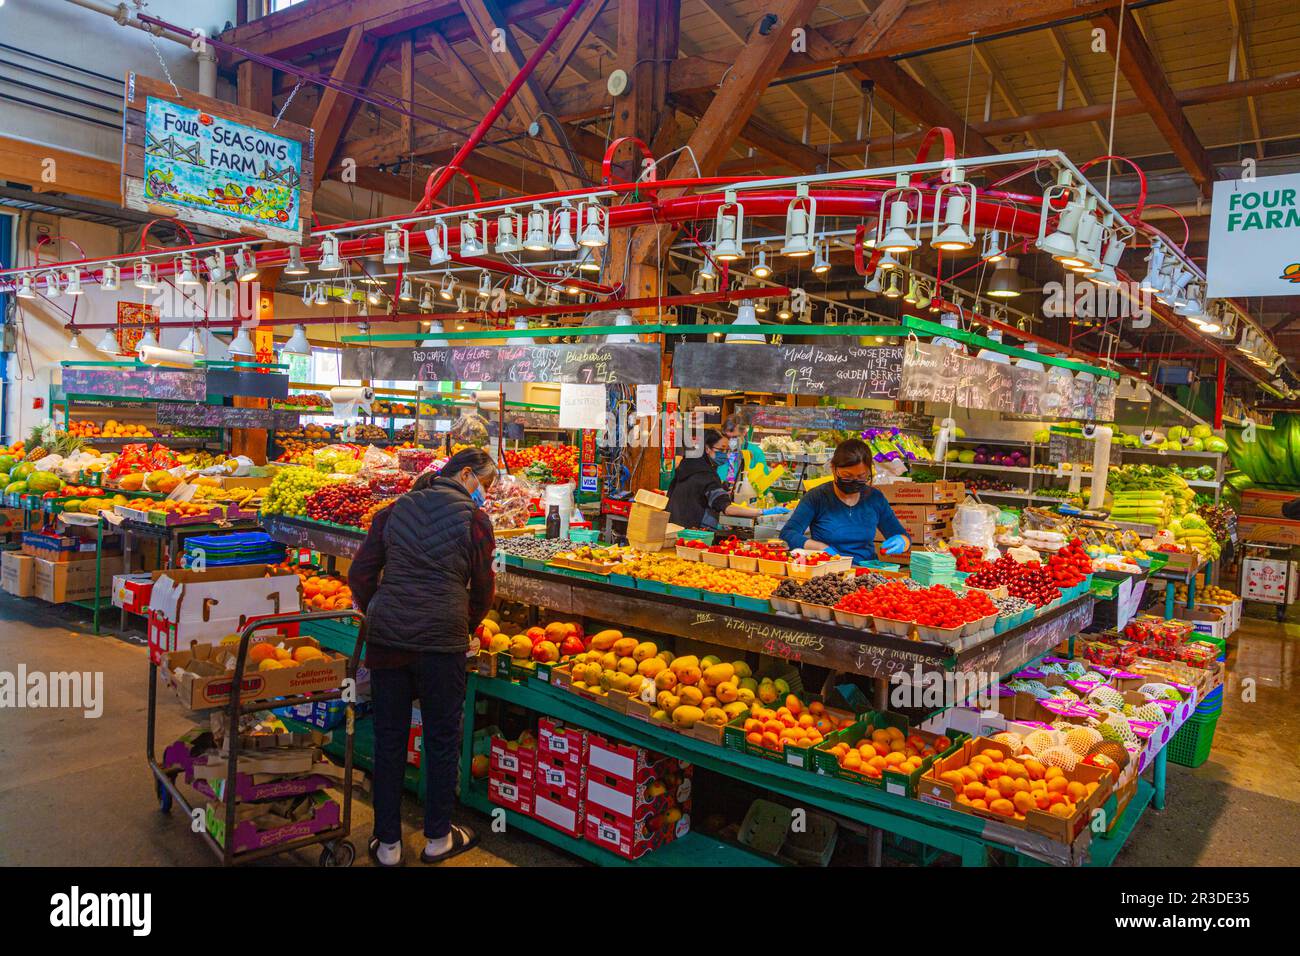 Interior view of Granville Island Public Market in Vancouver Canada Stock Photo